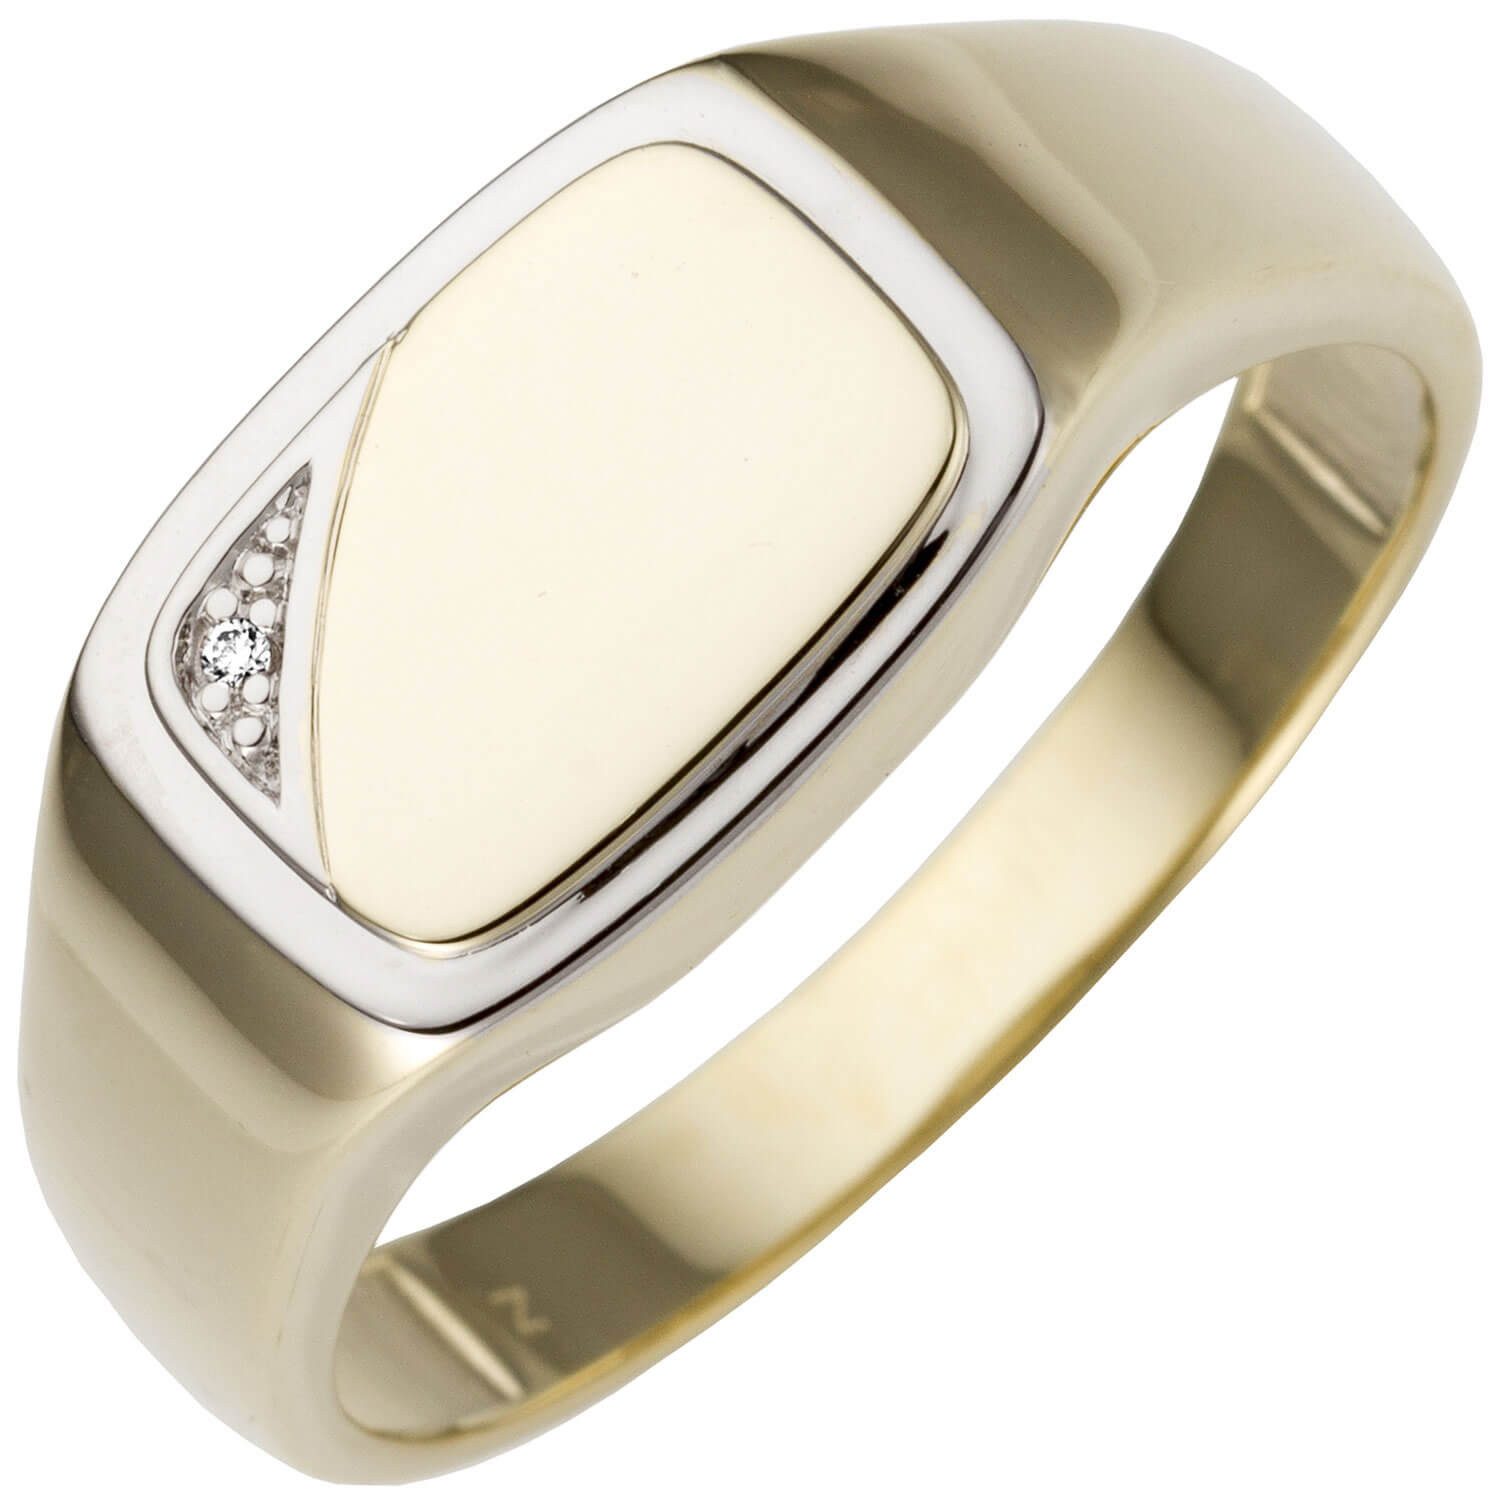 Schmuck Krone Silberring Ring 585 Gelbgold bicolor mit Brillant flach glänzend, Gold 585